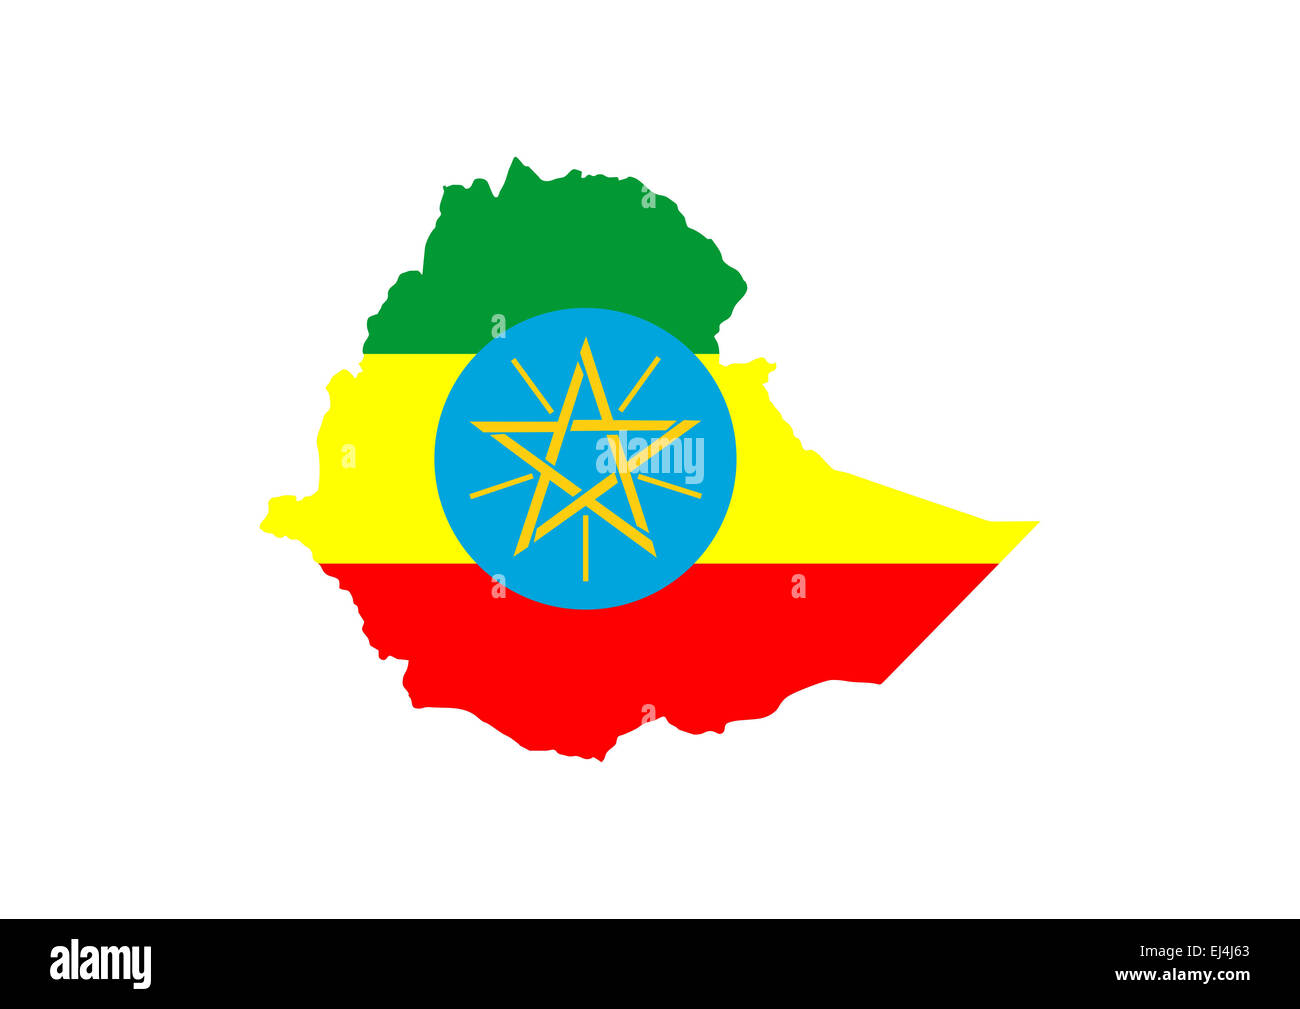 ethiopia country flag map shape symbol illustration Stock Photo - Alamy